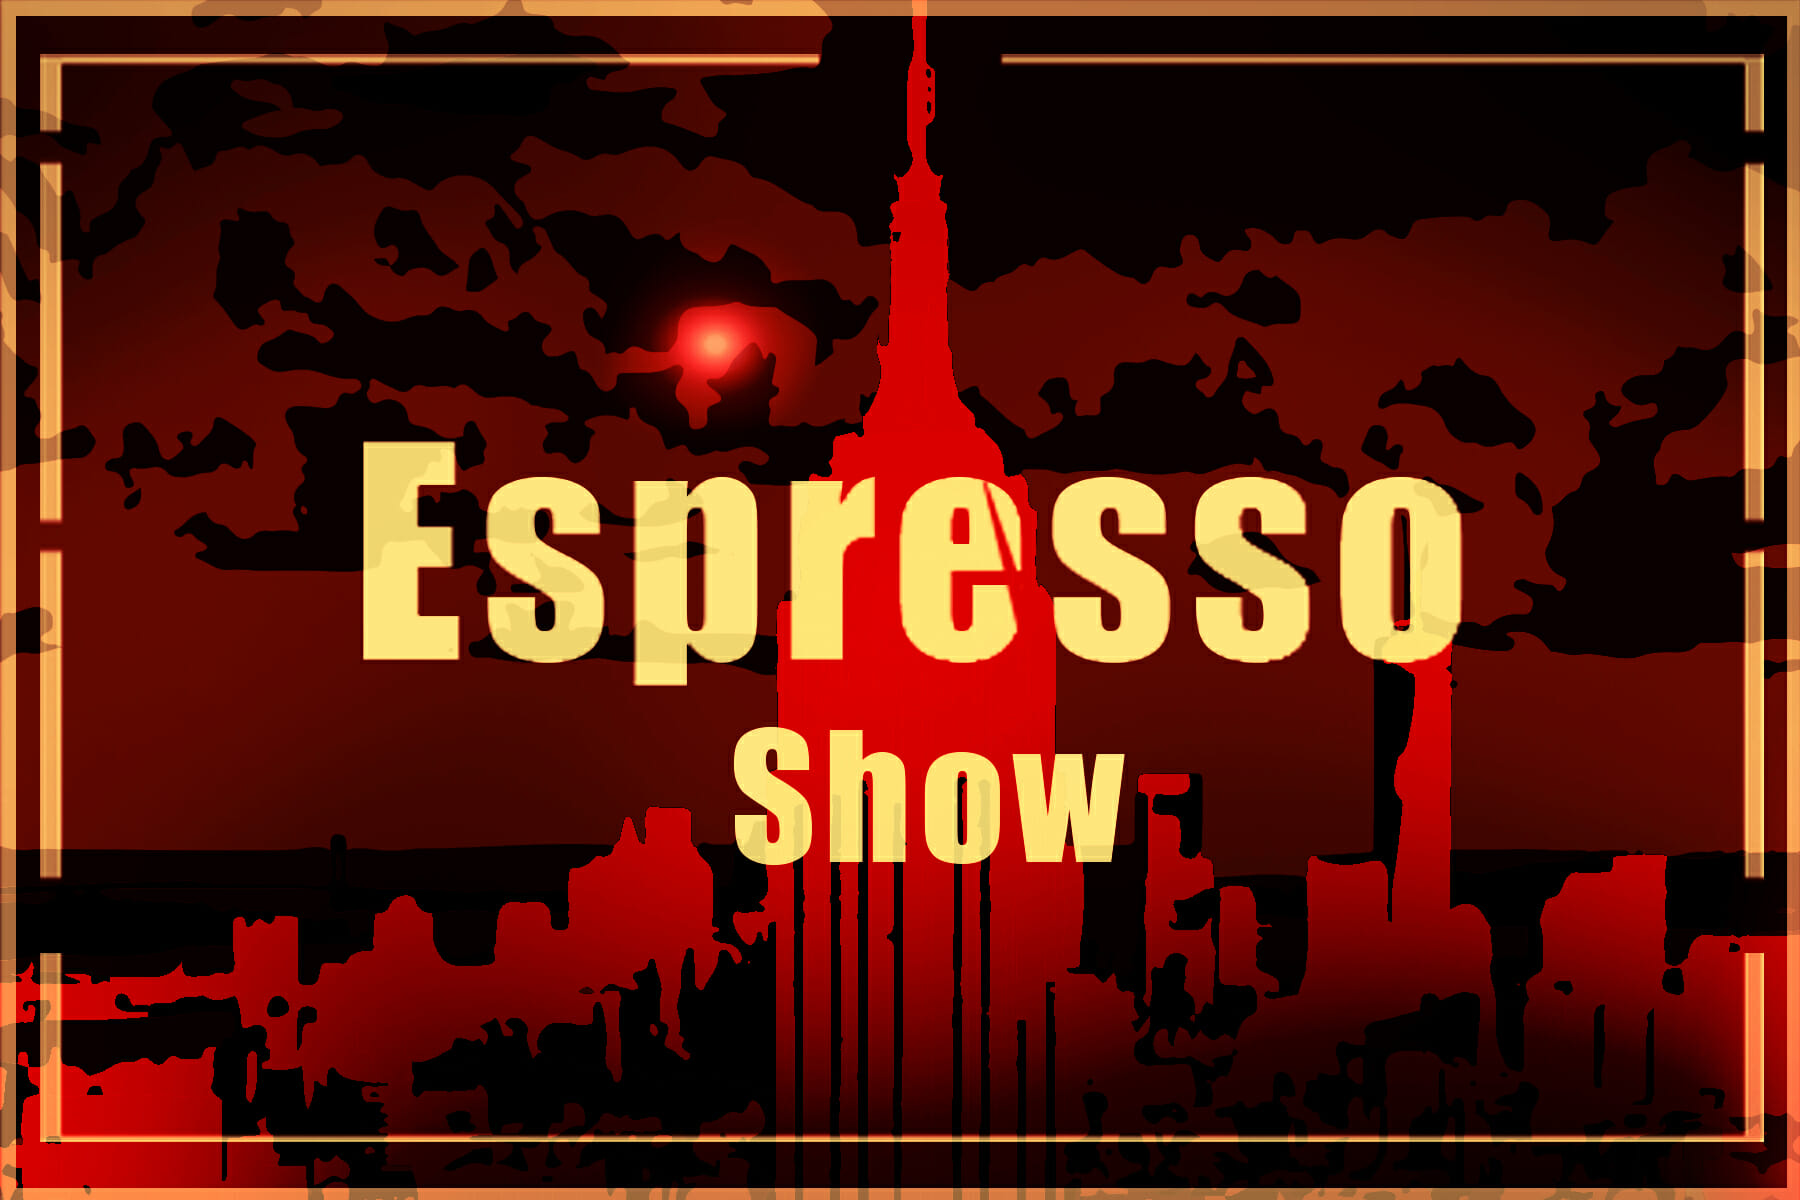 Espresso Show 5-19-17 Espresso Show ma już trzy miesiące!